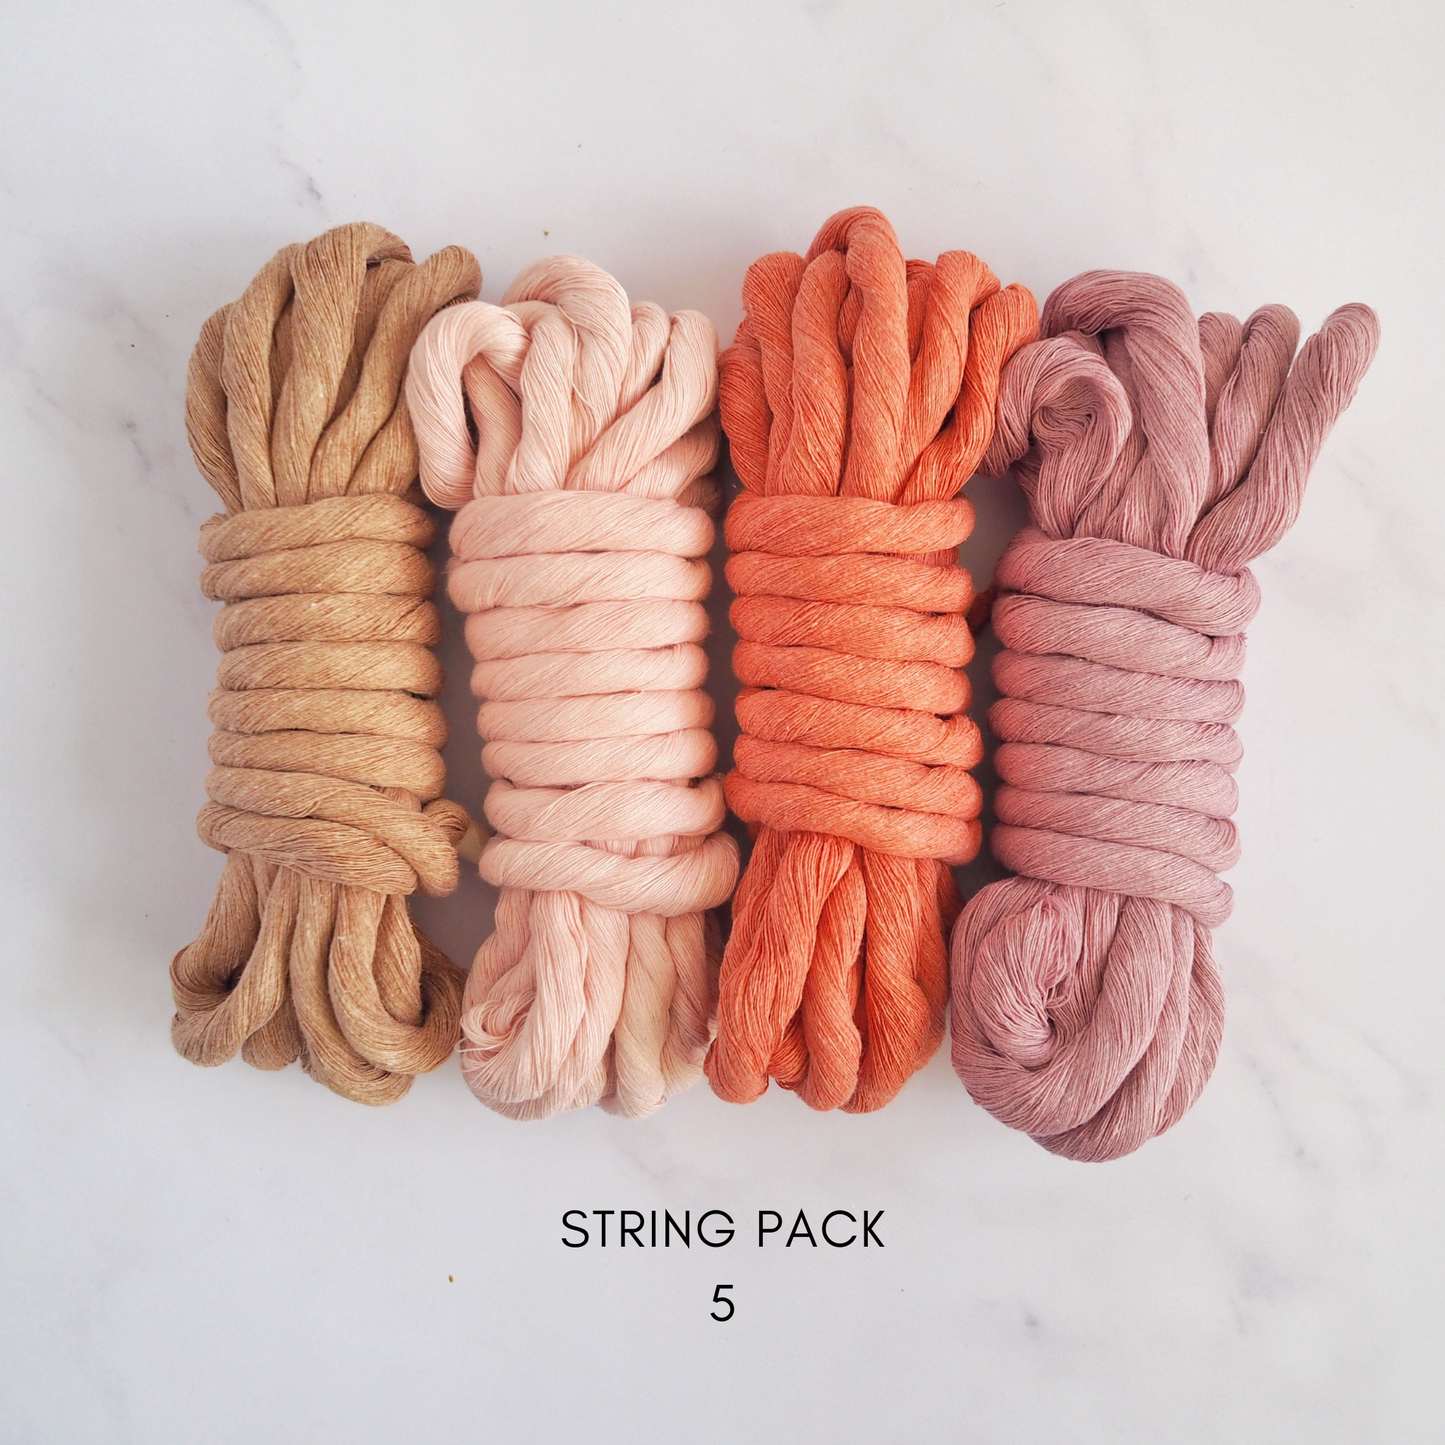 12mm String | Pack 5 The Joyful Studio